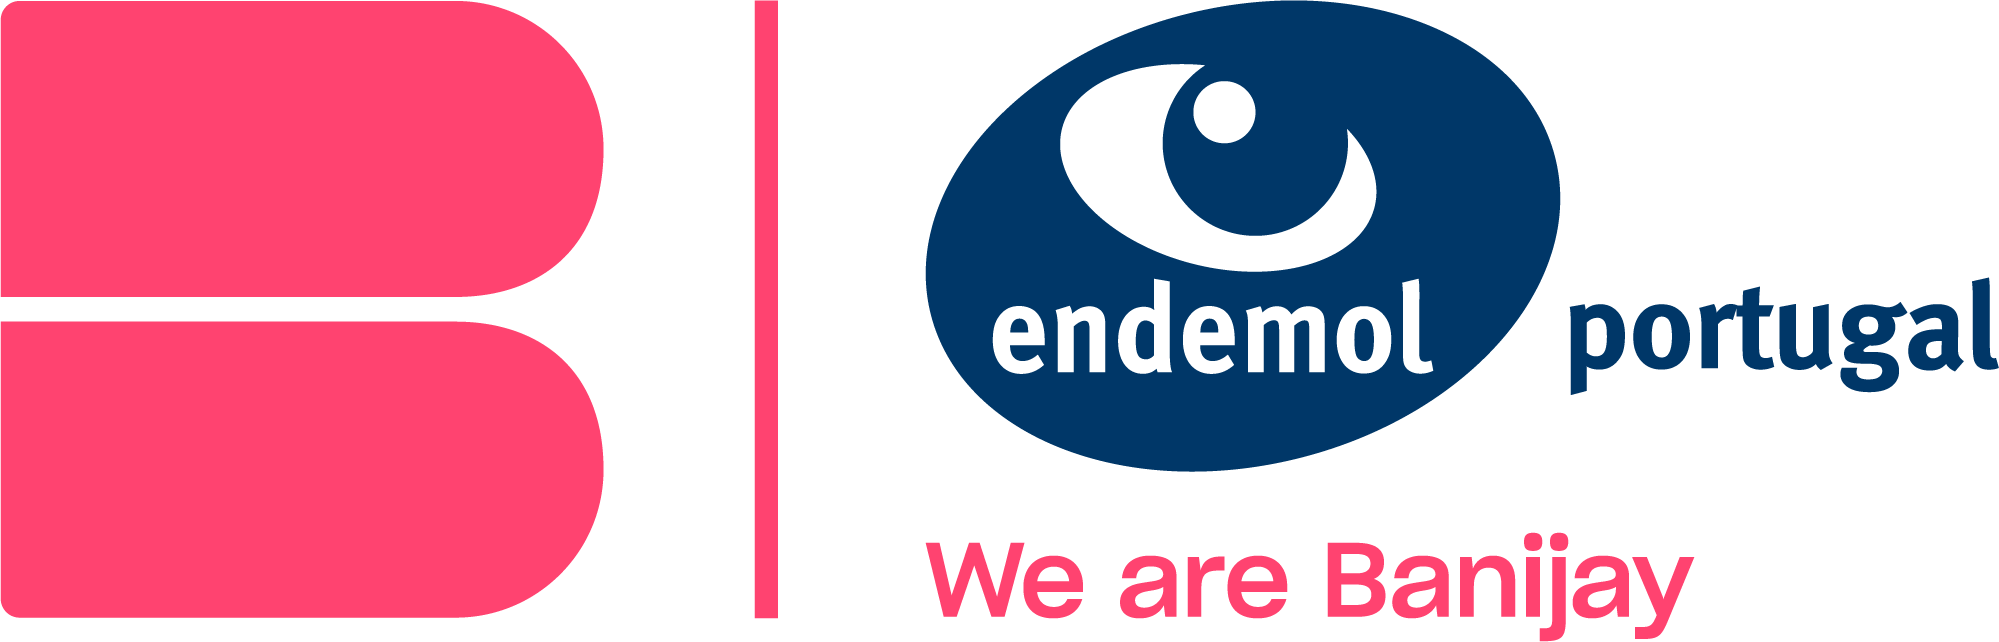 Endemol Portugal - company